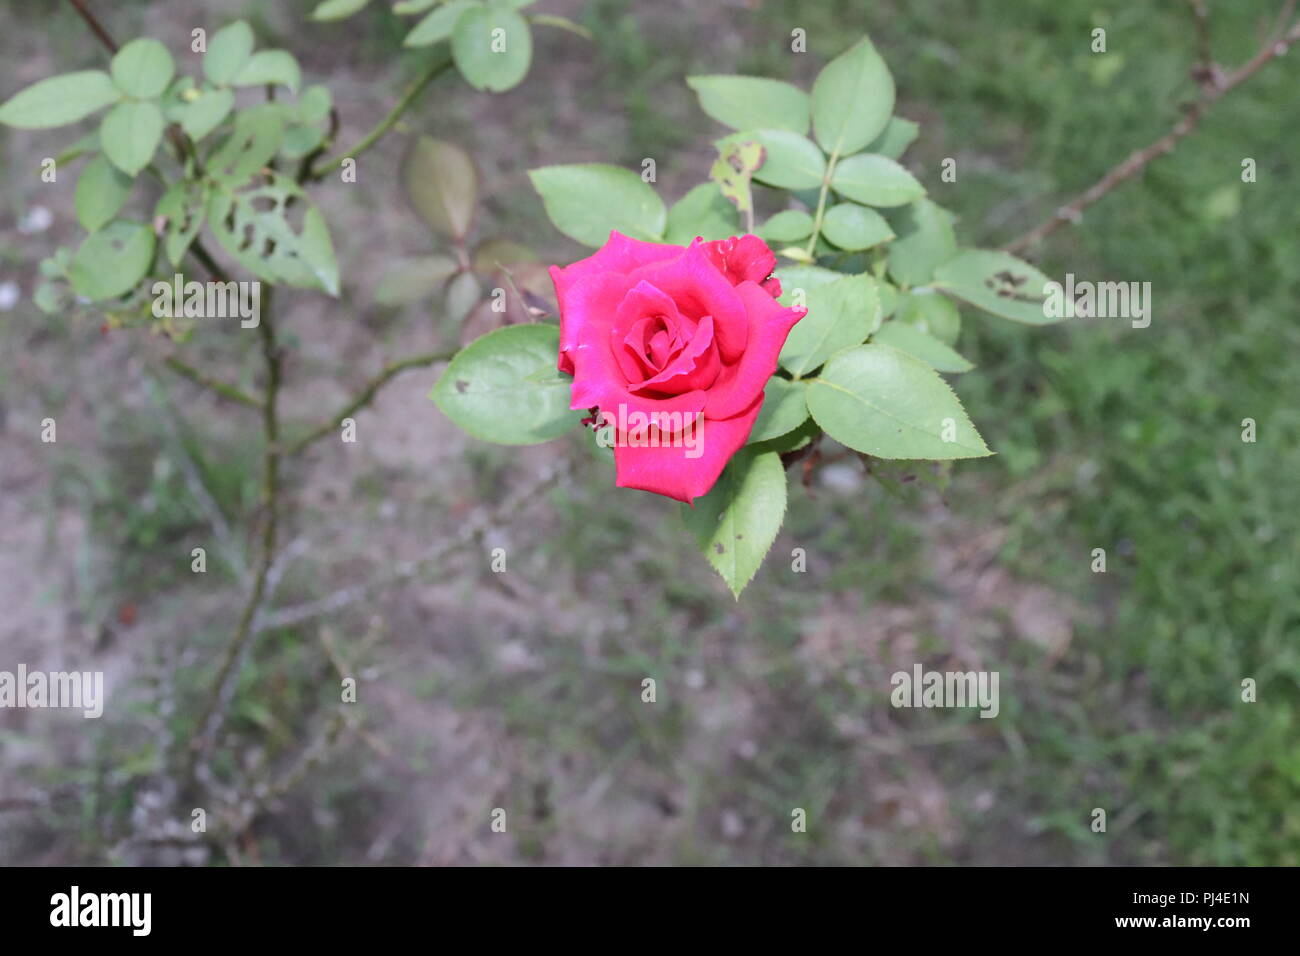 Profondo rosso,rosa con dei fiori il verde delle foglie e gambi di albero.Red Rose, simbolo dell'amore. Foto Stock